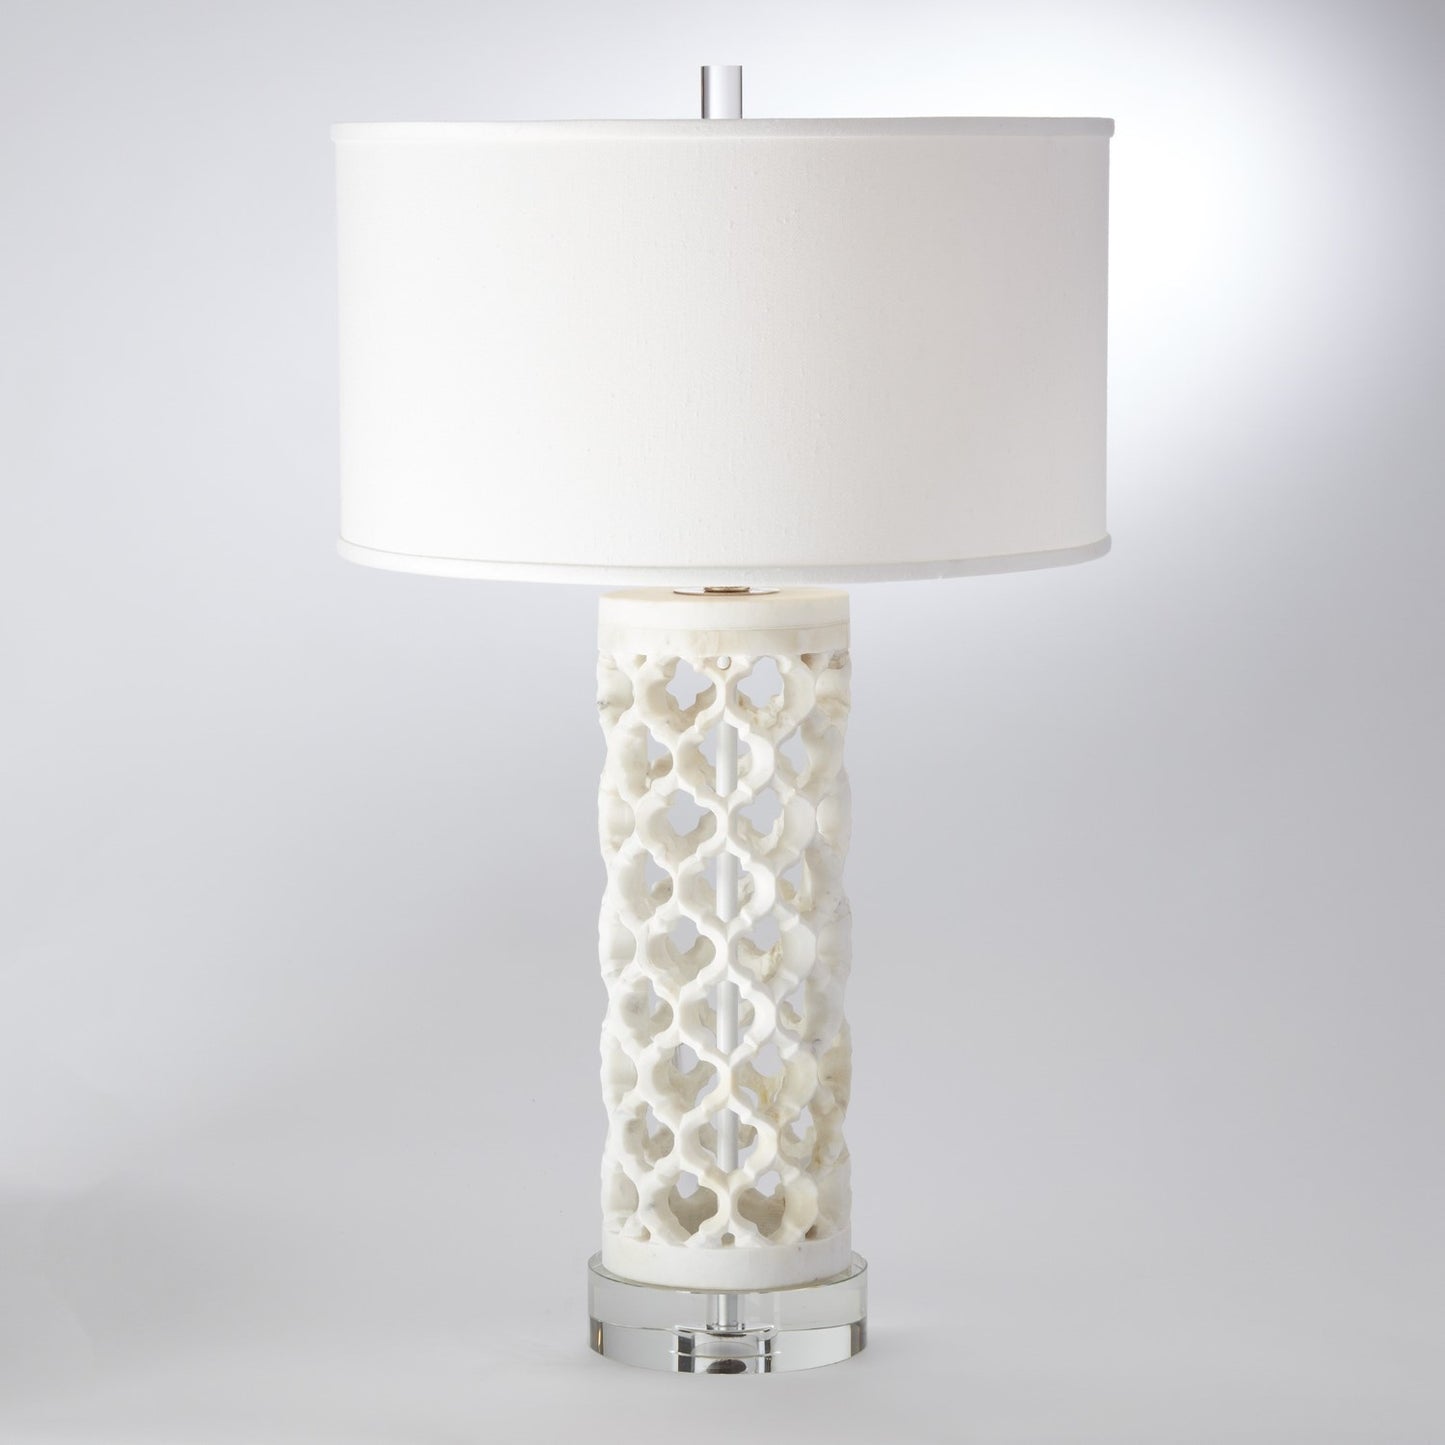 Round Arabesque Marble Table Lamp - Grats Decor Interior Design & Build Inc.